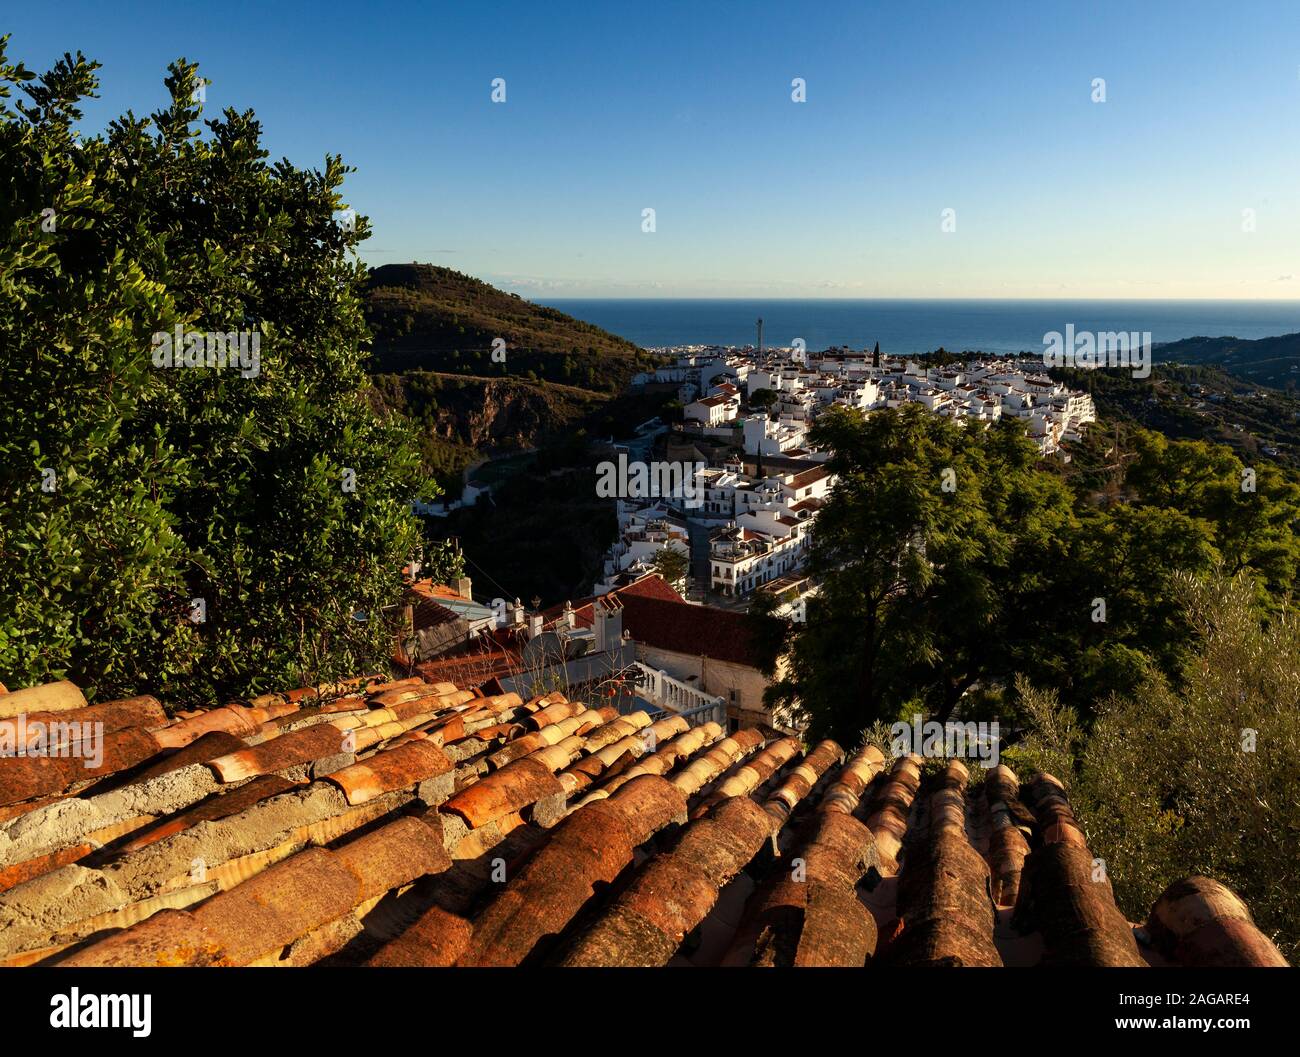 Des carreaux de terre cuite au-dessus de la nouvelle partie de la village blanc de Frigiliana en typique style Andalucían, province de Malaga, Andalousie, Espagne Banque D'Images